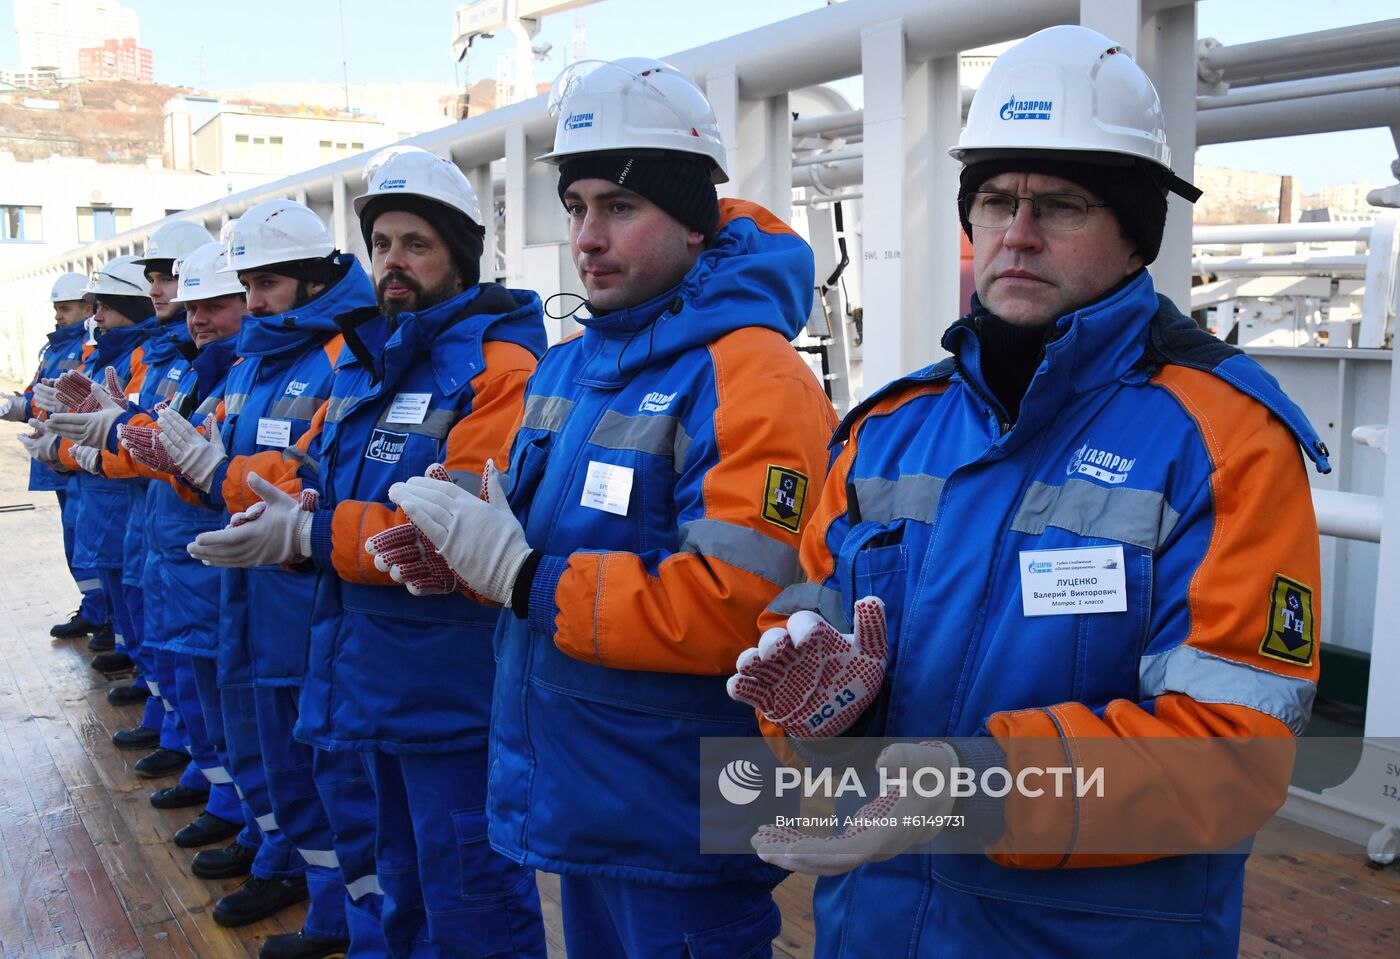 Подъем флага РФ на судне снабжения "Остап Шеремета"